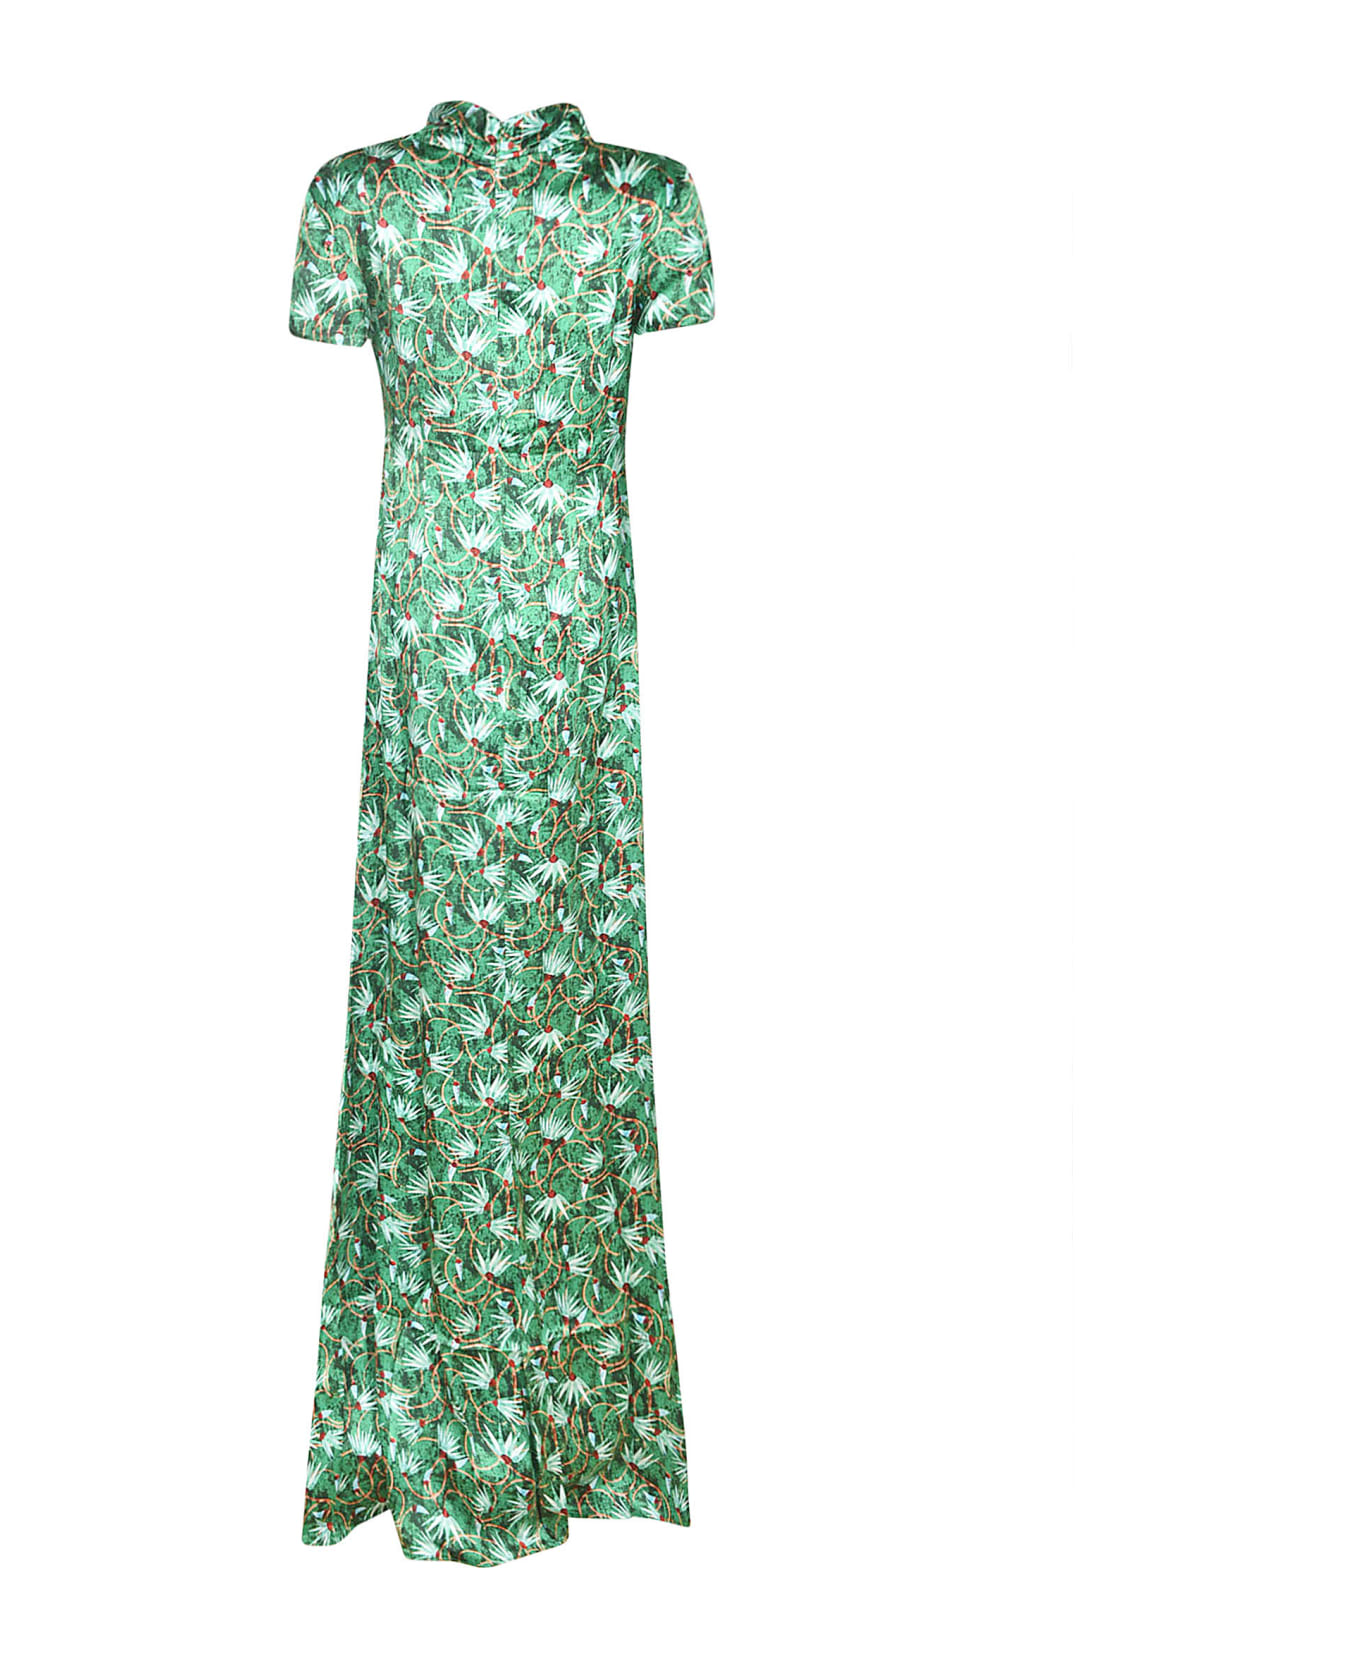 Saloni Kelly Dress - Emerald